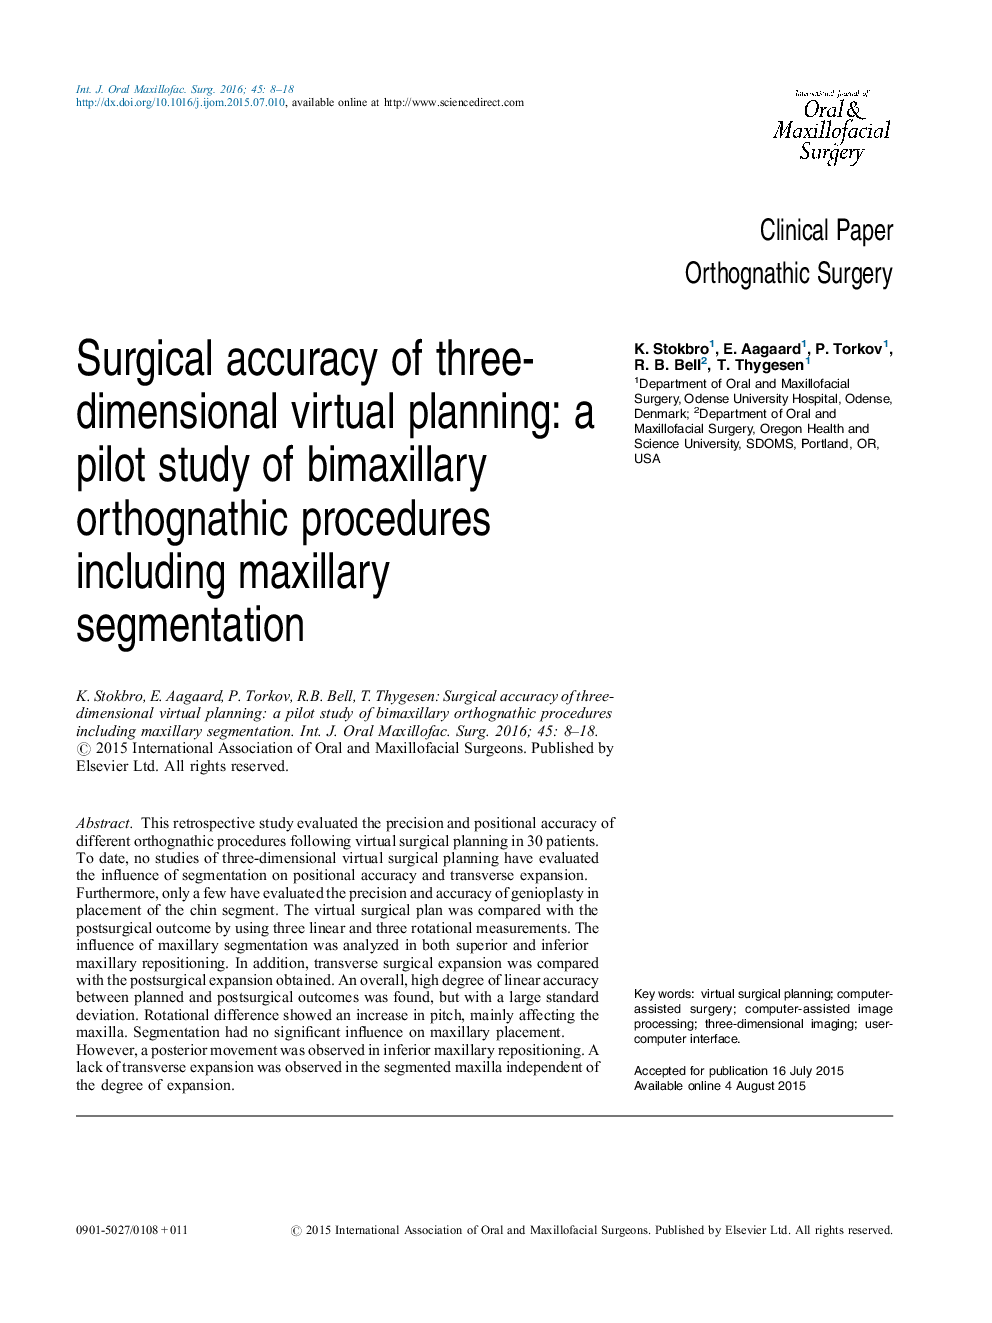 دقت جراحی برنامه ریزی مجازی سه بعدی: یک مطالعه آزمایشی از روش های ارتوآنتیو بیوماسیری شامل تقسیم بندی فک بالا 